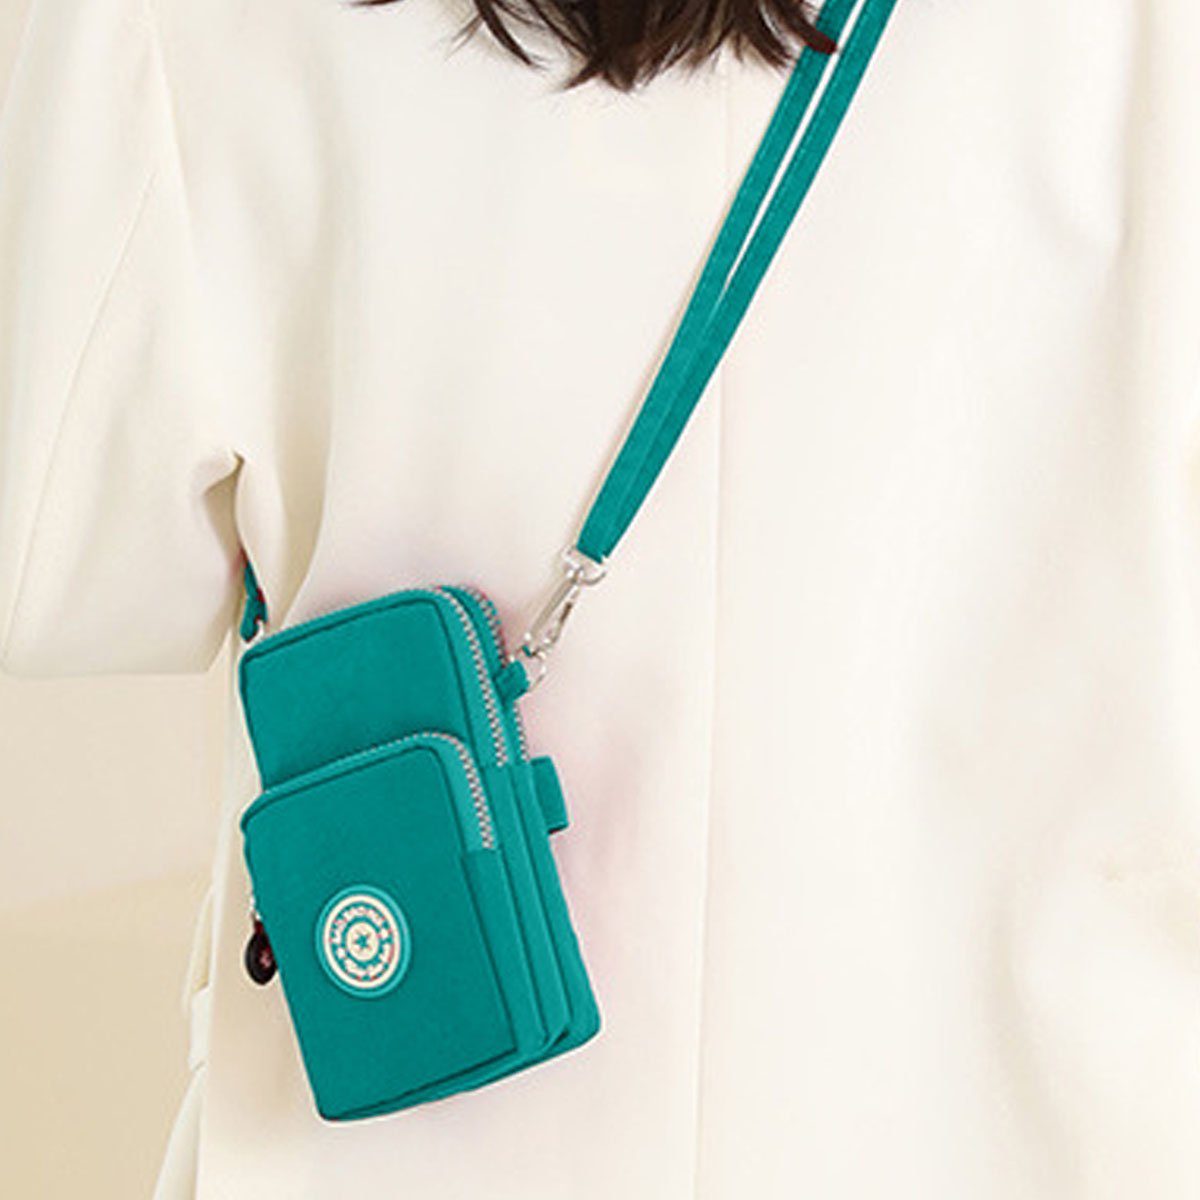 Jormftte Schultertasche Handy Umhängetasche Universal zum Umhängen Kartentasche grün Handytasche